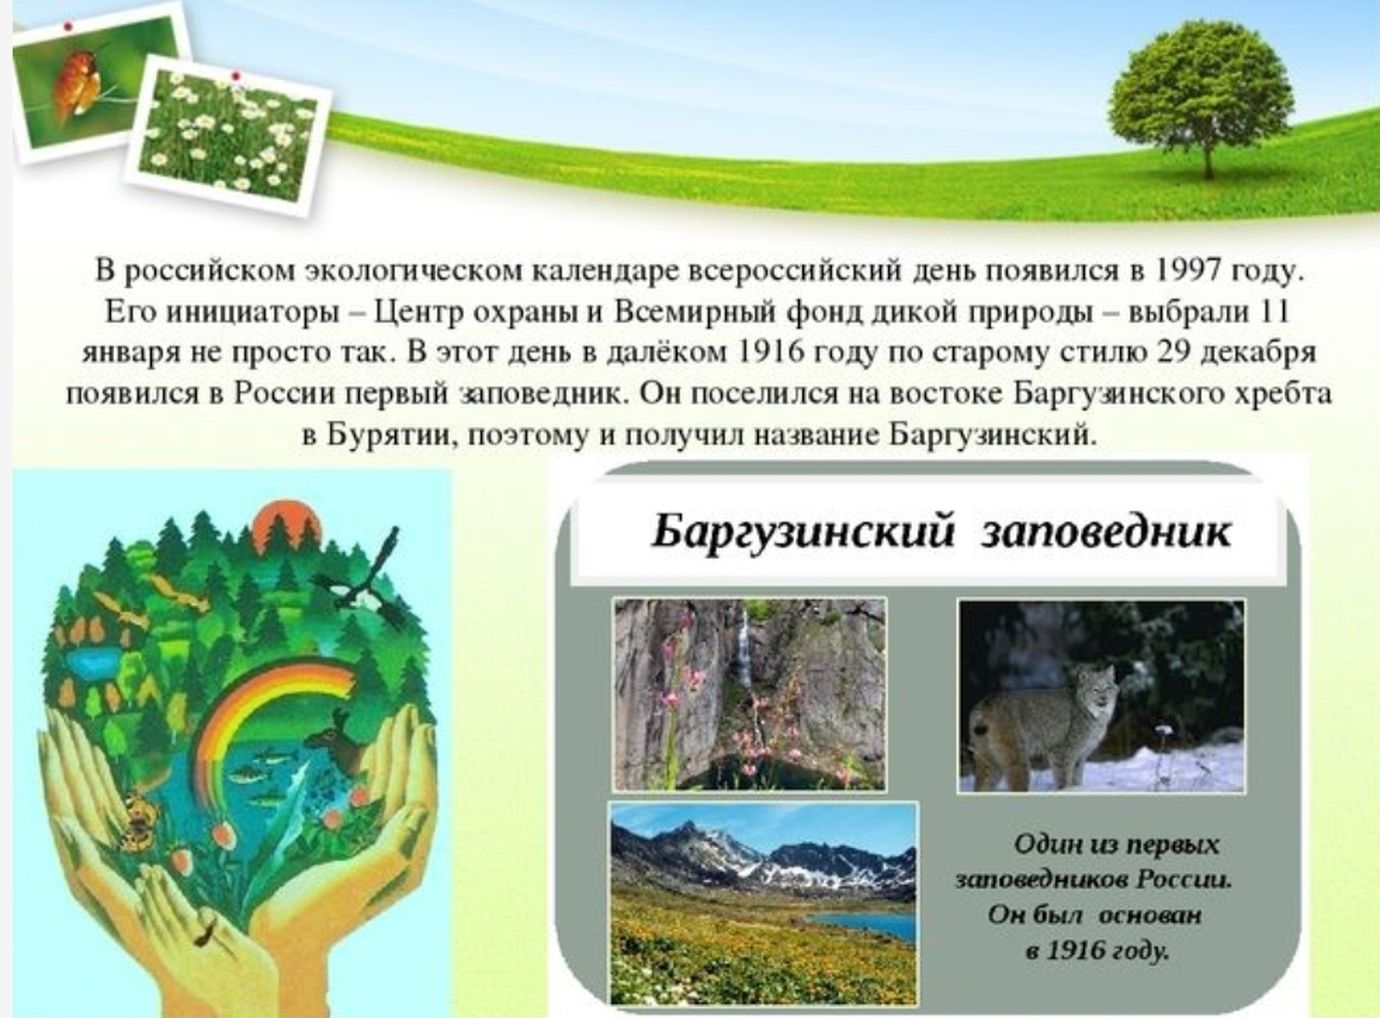 Презентации к Дню национальных парков